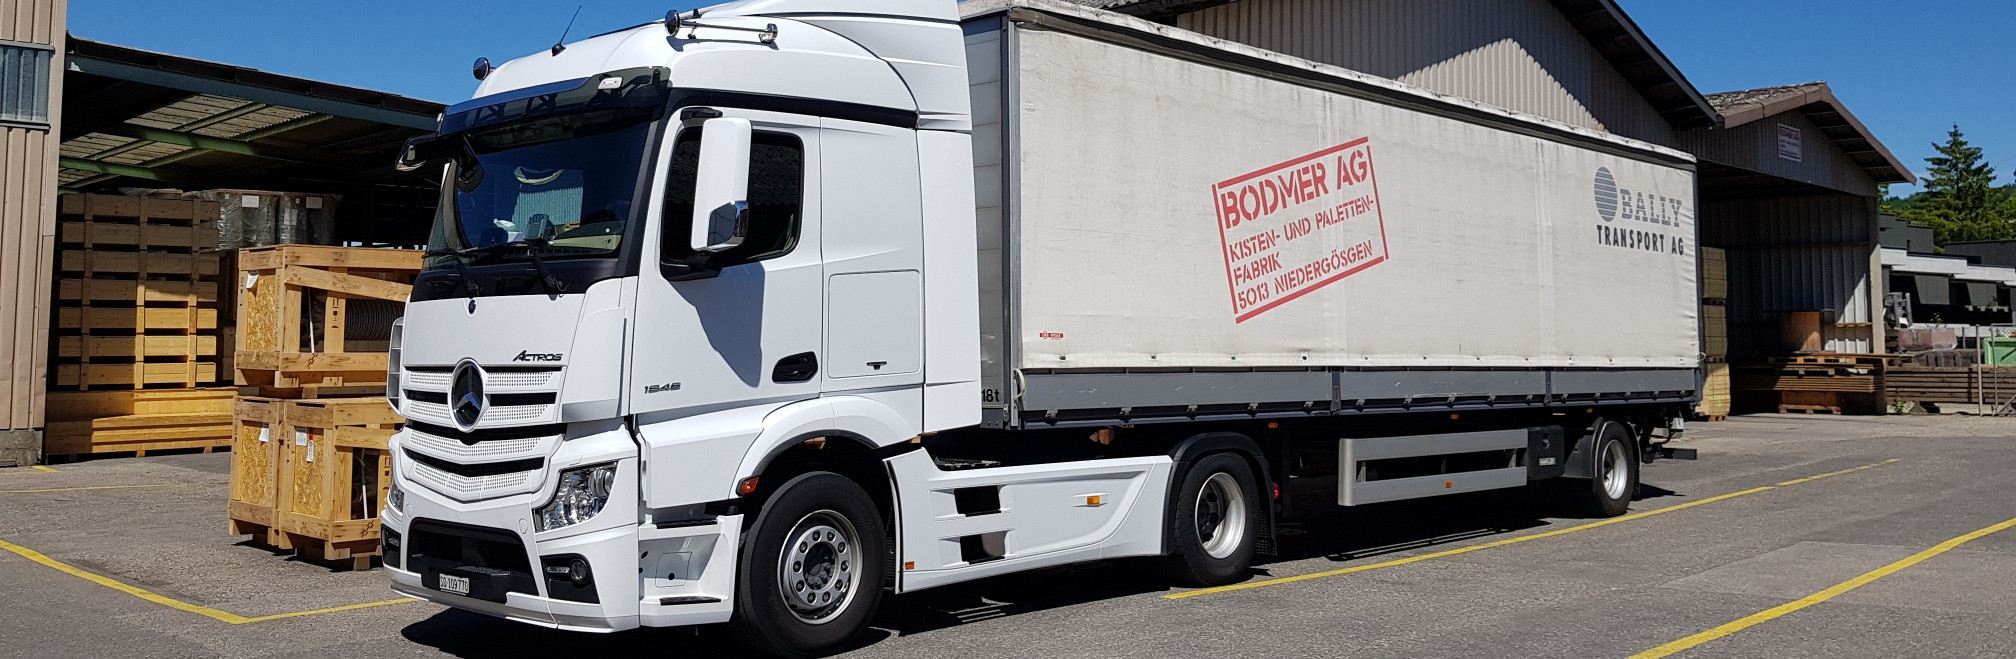 Grosser Bodmer AG Lastwagen für den sicheren Transport von Waren.